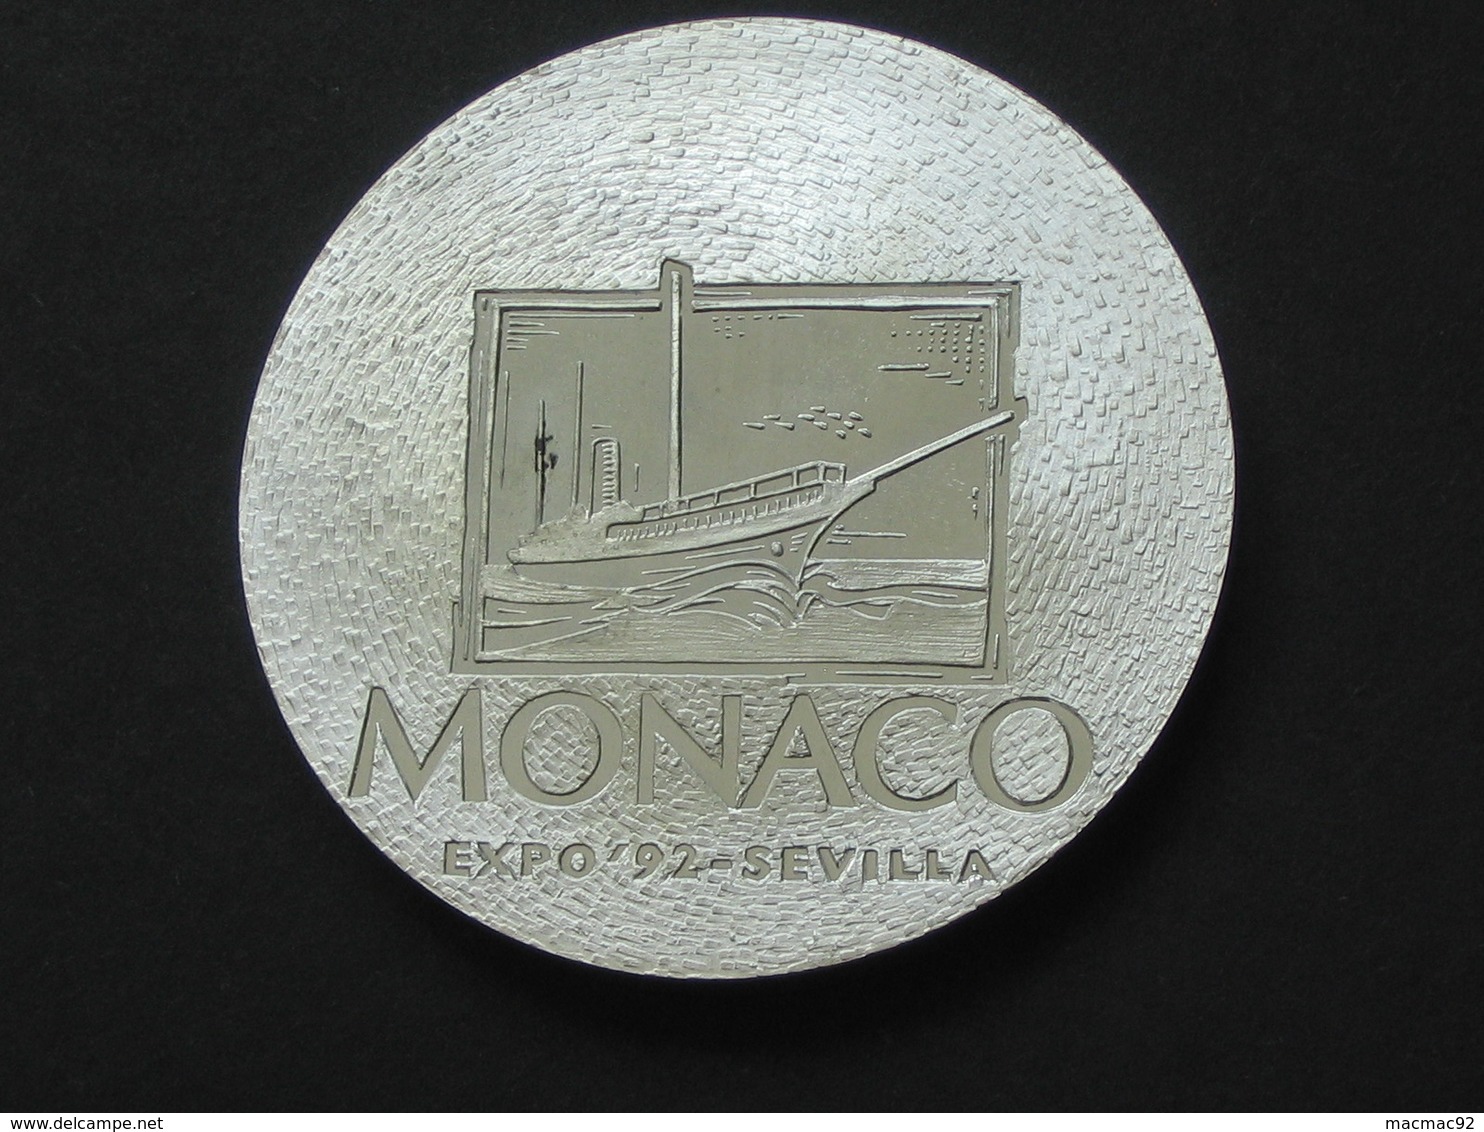 Très Belle Médaille PRINCIPAUTÉ DE  MONACO -16 Mai 1992 Journée National Expo'92 - SEVILLA   **** EN ACHAT IMMEDIAT **** - Professionnels / De Société